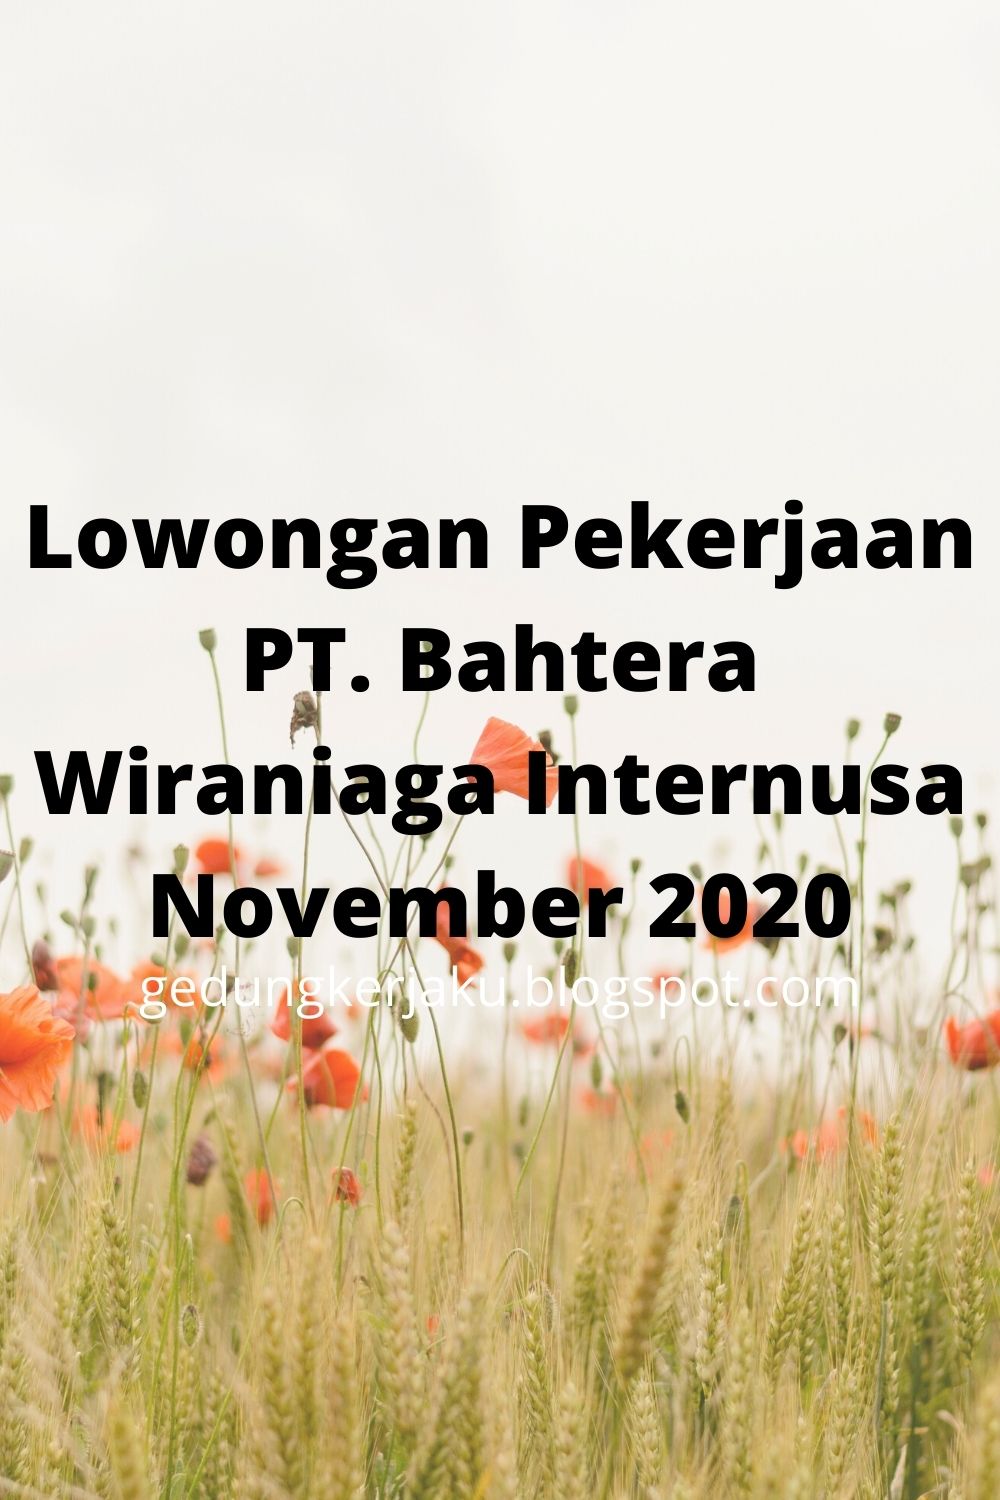 Lowongan Pekerjaan PT. Bahtera Wiraniaga Internusa November 2020